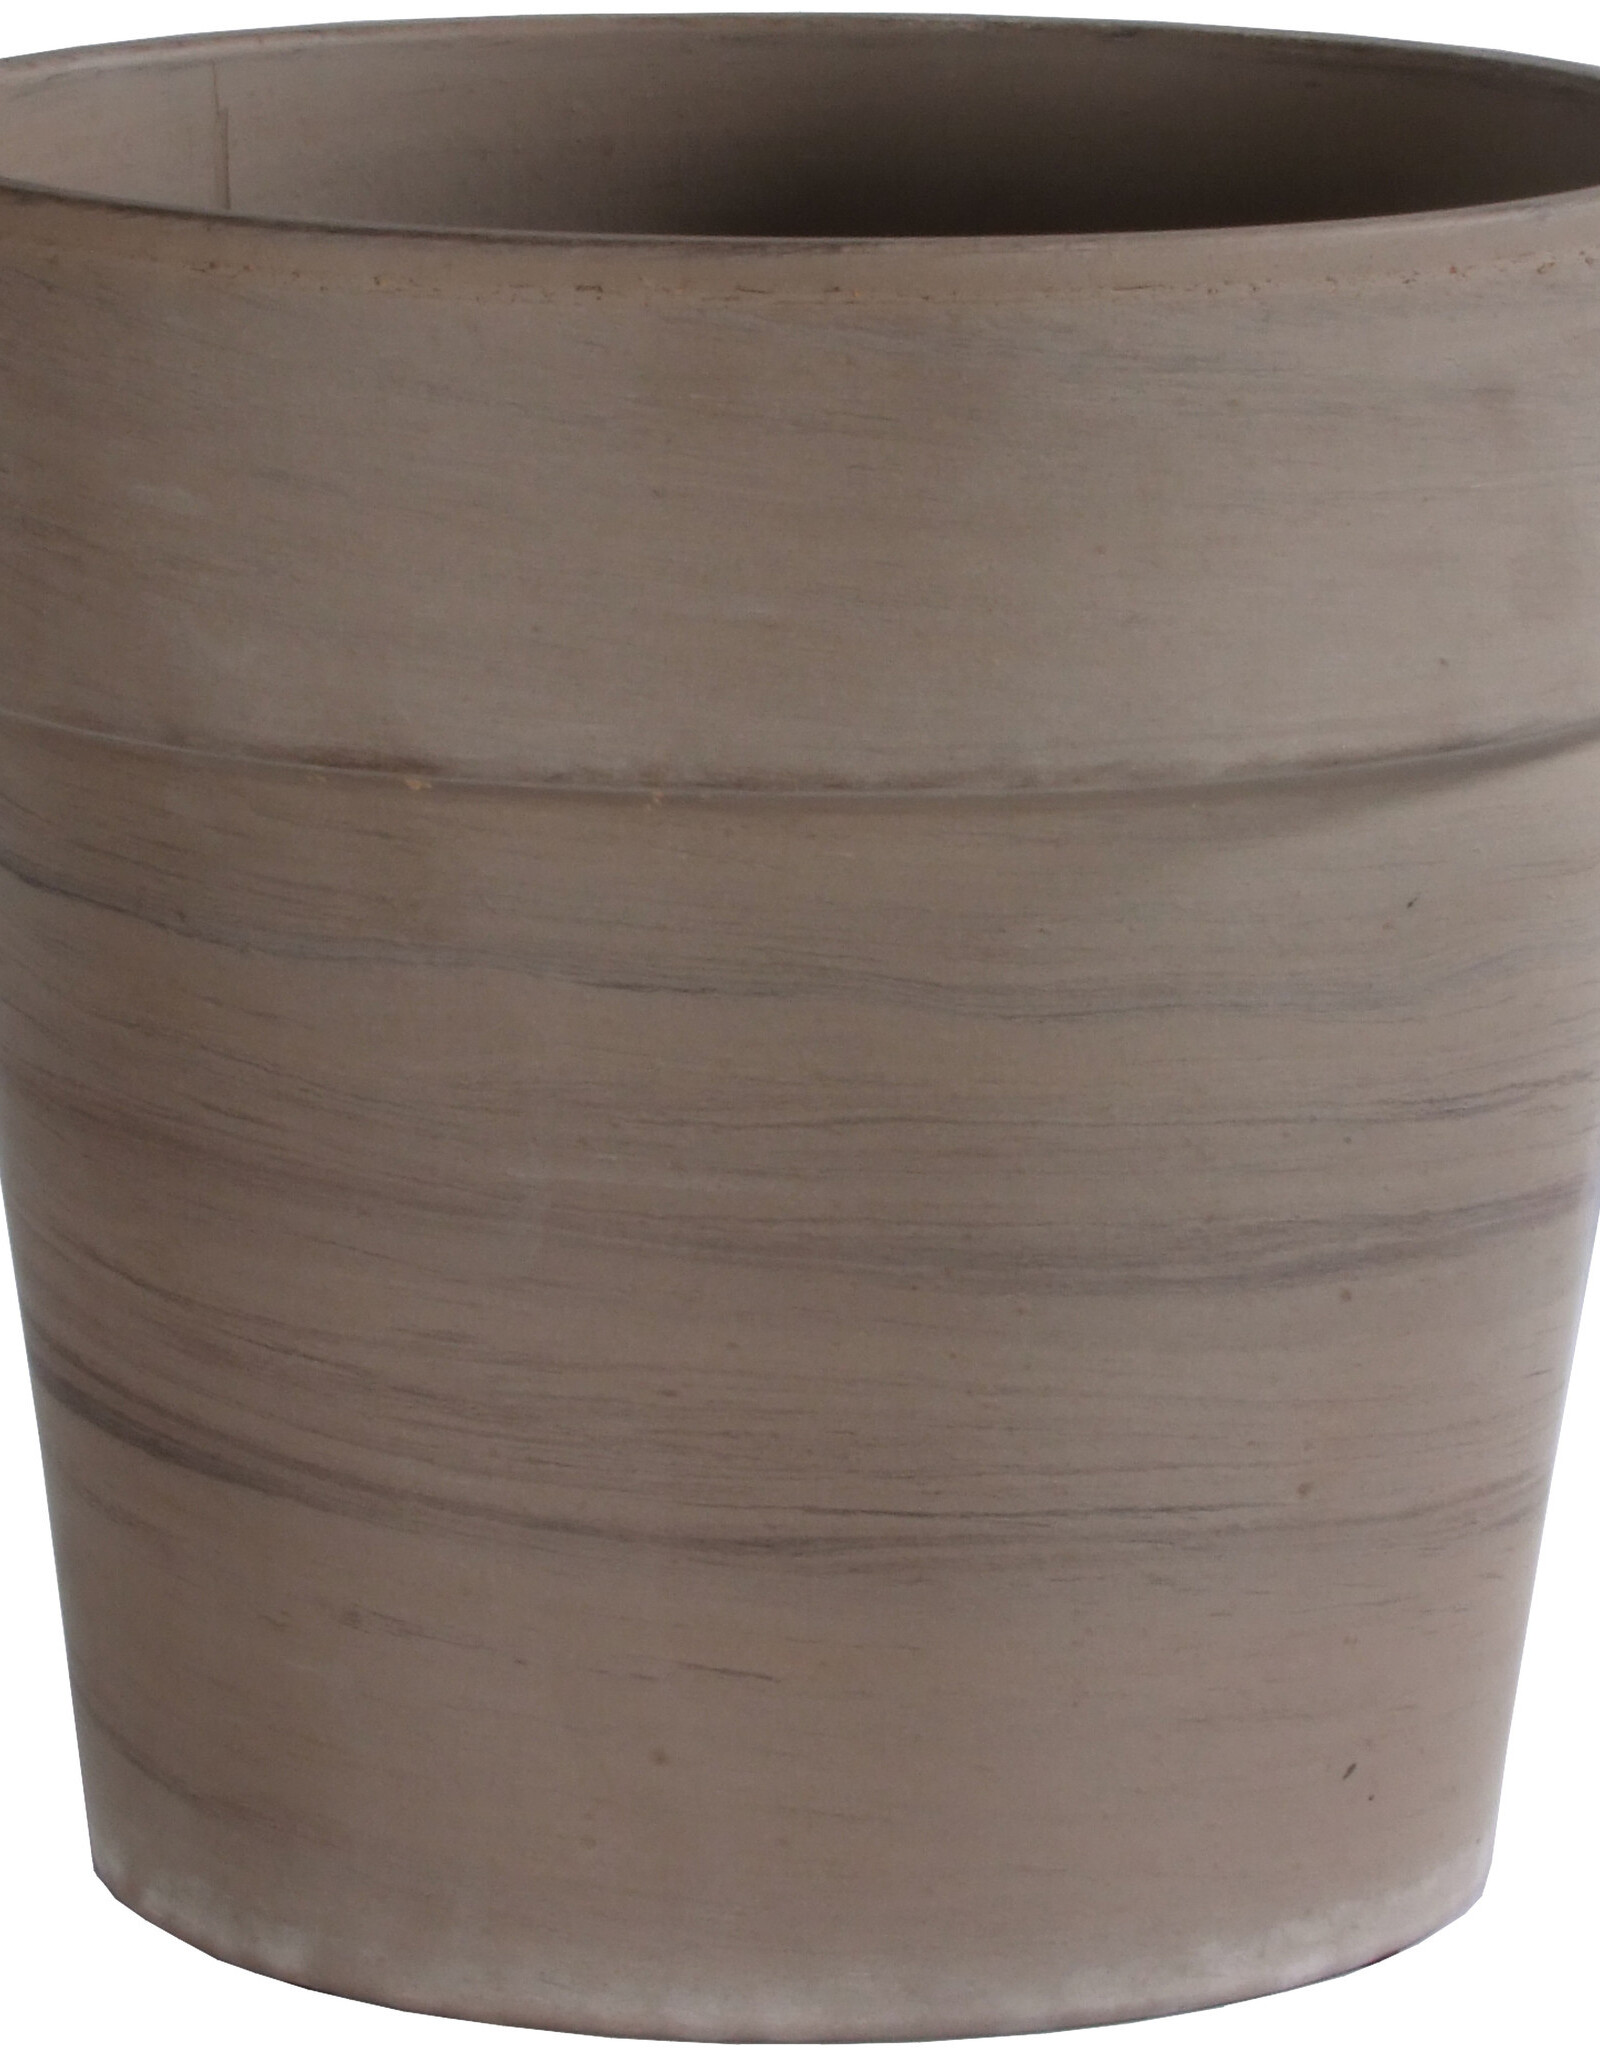 8.5“ x 7.75” Calima Pot- Basalt Clay